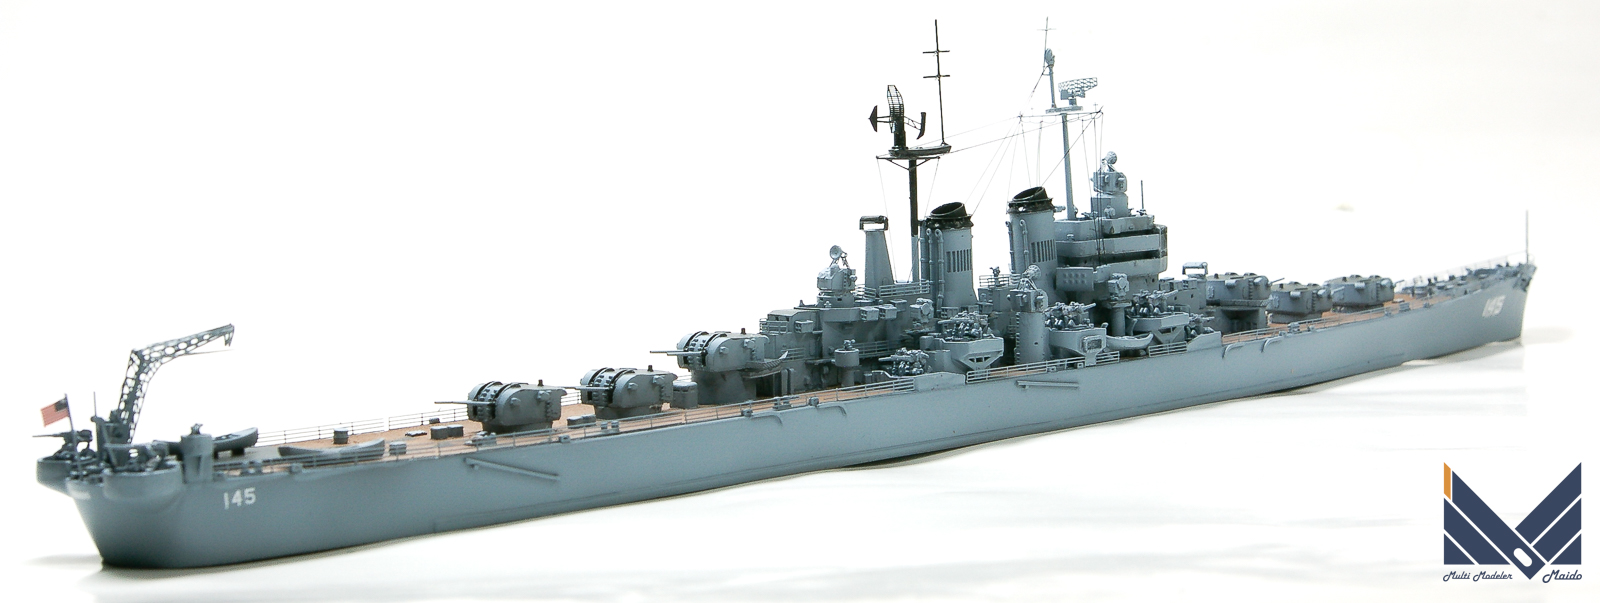 アドミラルティモデル 1/700 アメリカ海軍軽巡洋艦「ロアノーク」 完成